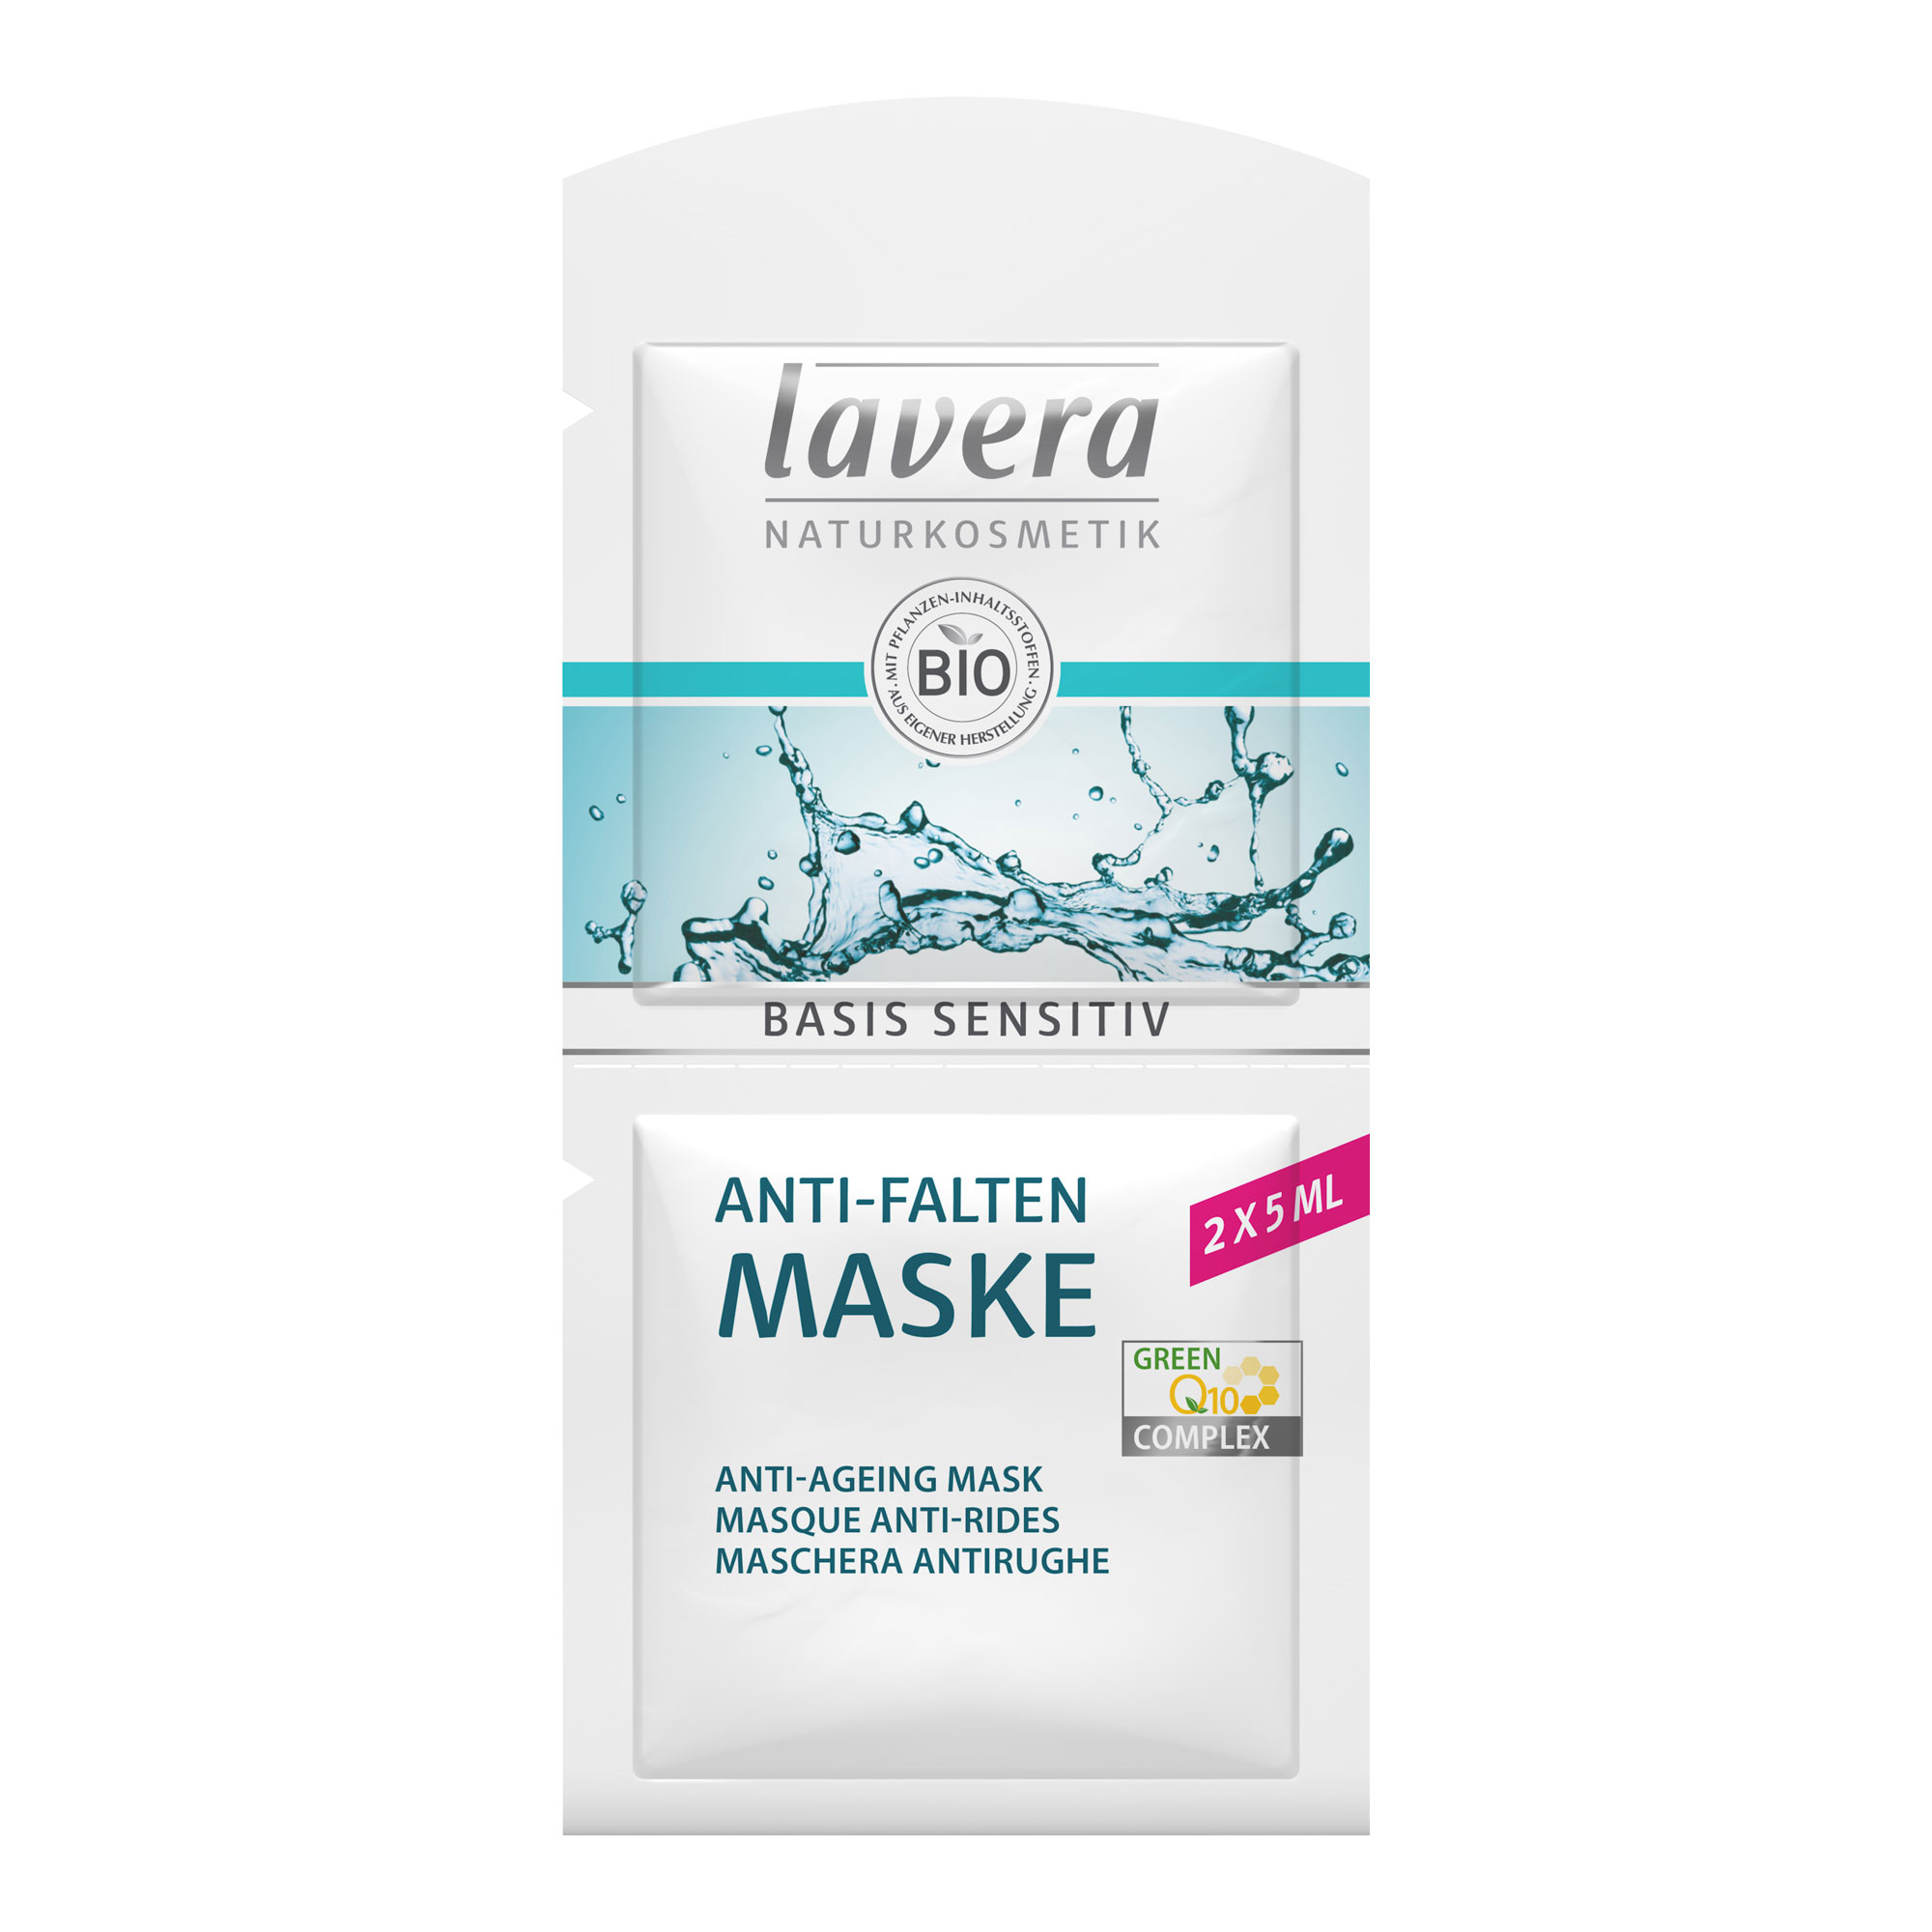 Die lavera Anti-Falten Maske mit natürlichem Q10 versorgt die Haut nachhaltig mit Feuchtigkeit und mindert Falten nachweislich.